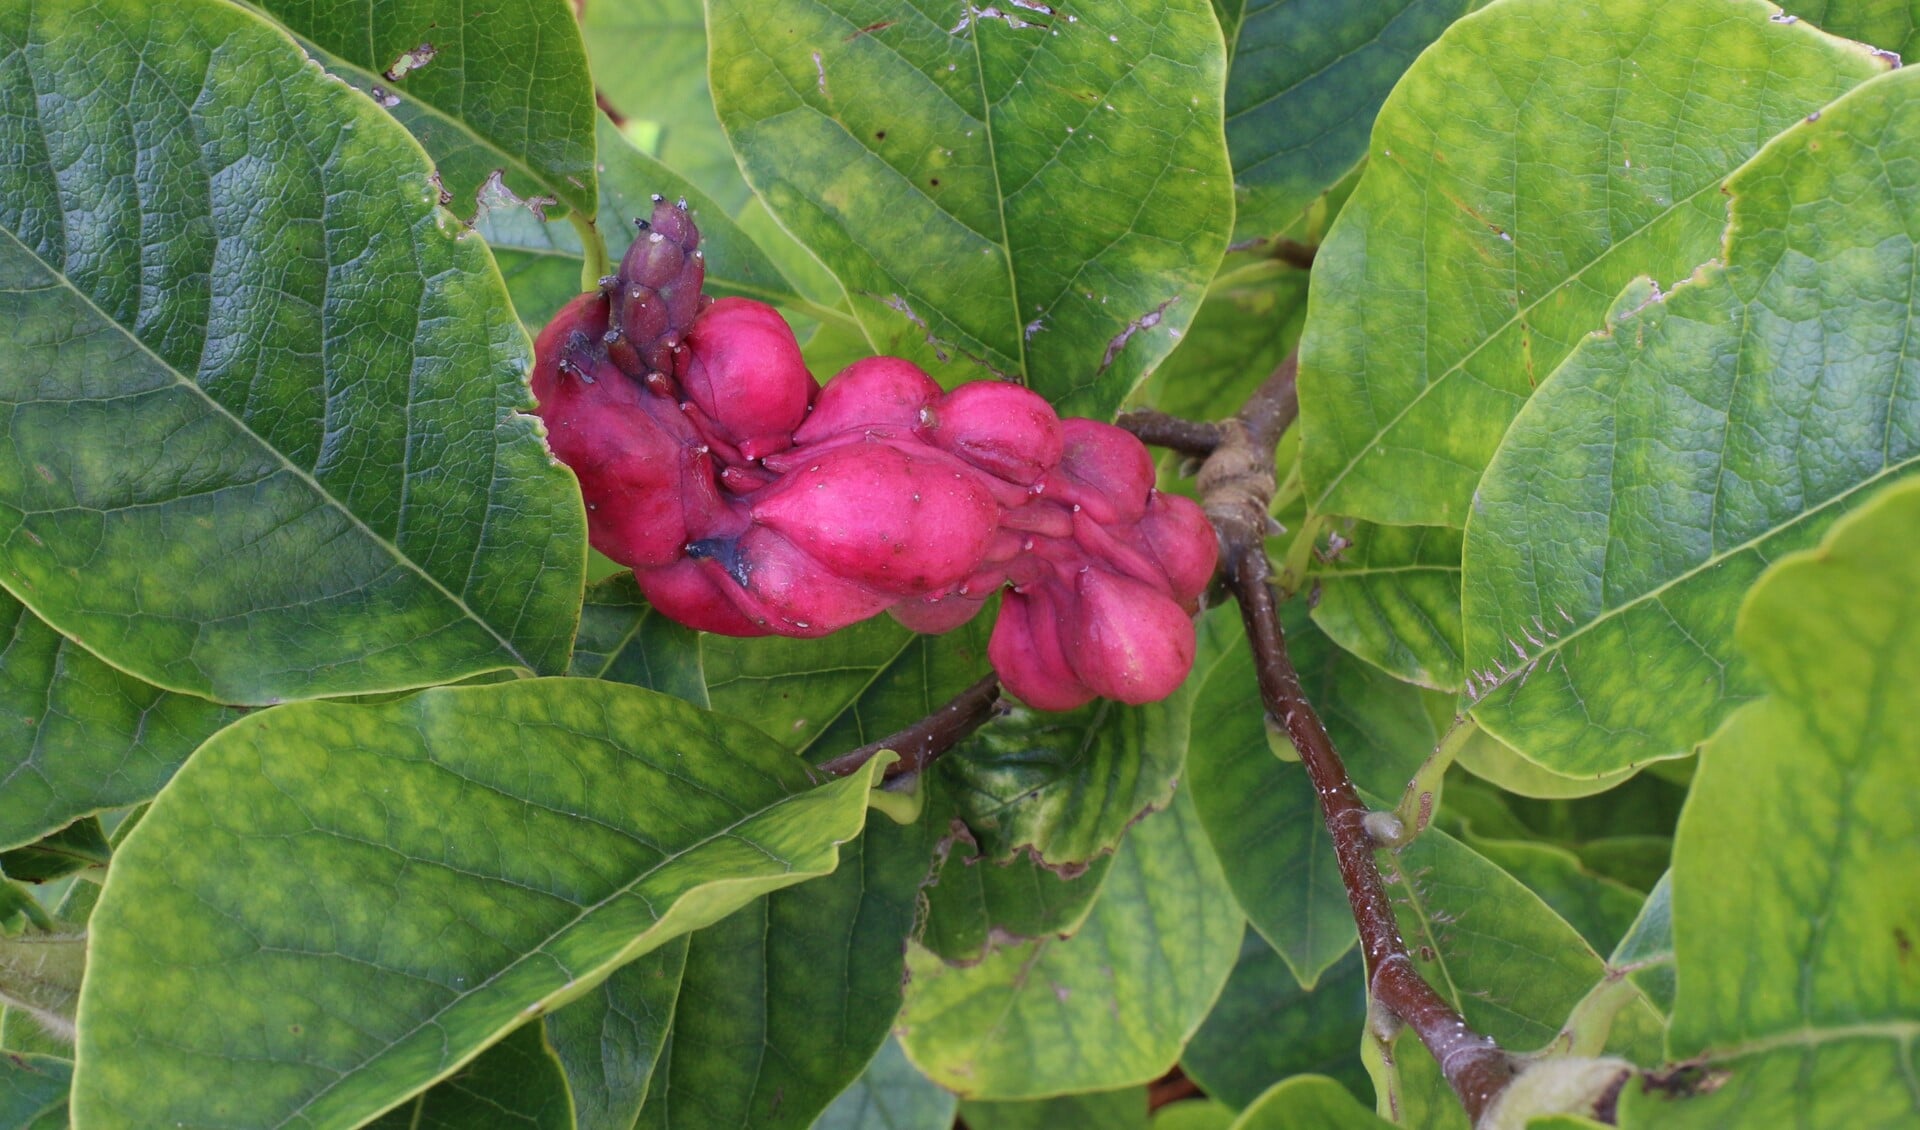 De vrucht van een magnolia is vaak onregelmatig van vorm. (Foto: Caroline Elfferich)